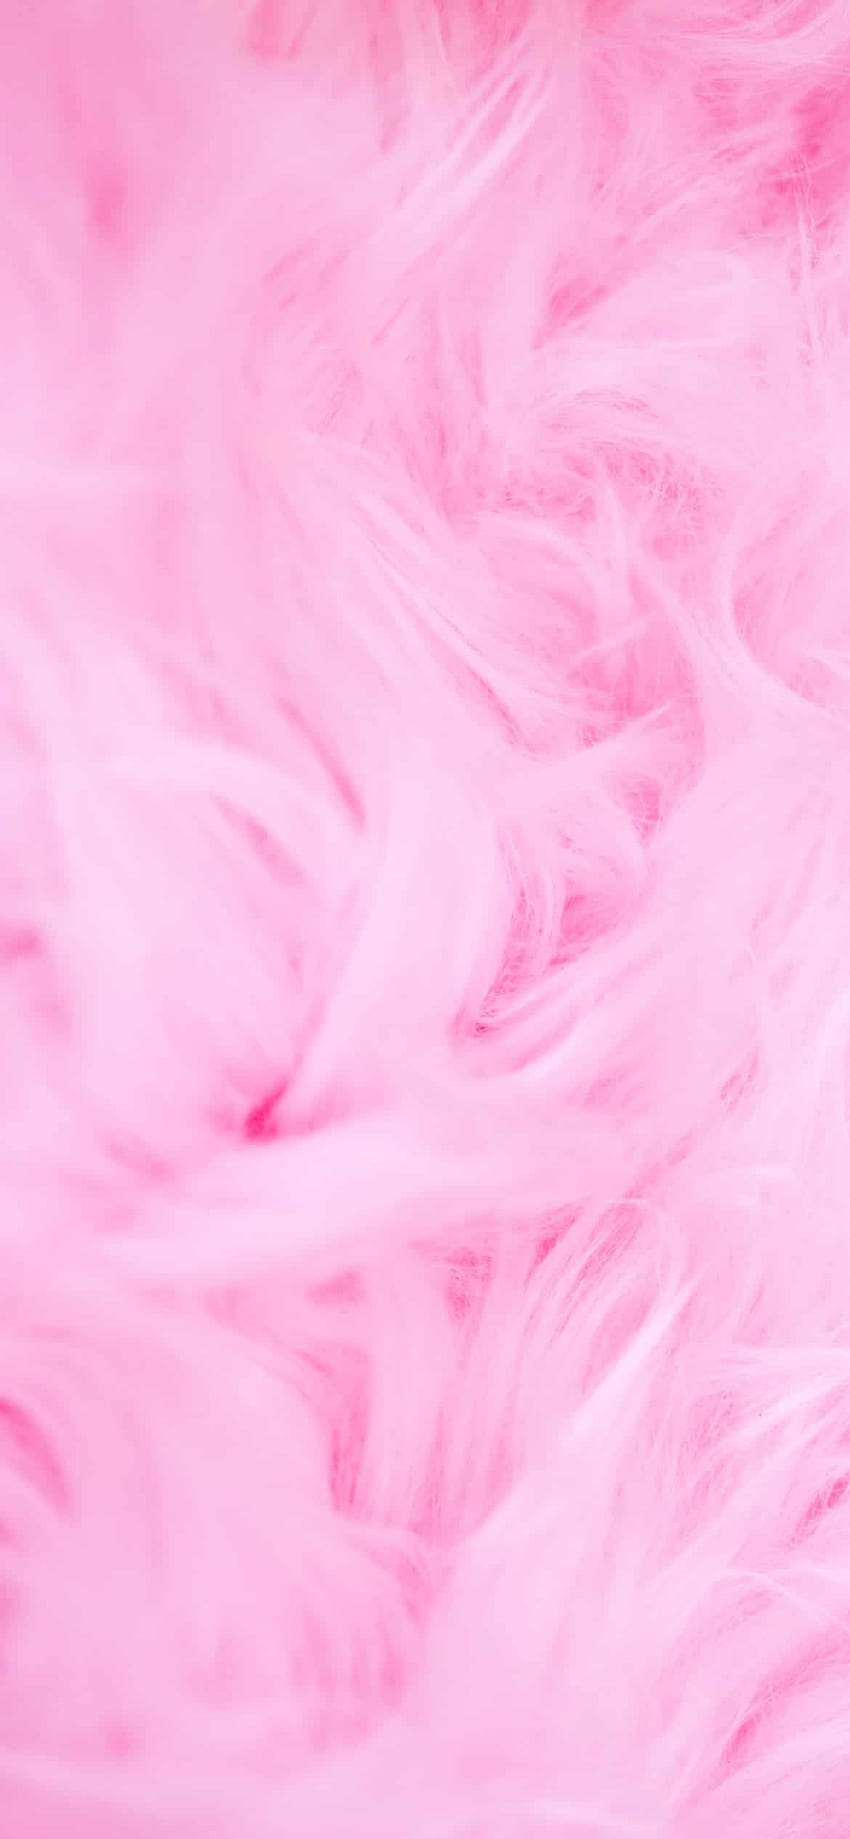 Pink Aesthetic Backgrounds là hình ảnh đại diện cho cái đẹp nhẹ nhàng, tươi mới và ngọt ngào. Hãy thử nhấp để khám phá những hình nền này và đắm chìm trong không gian tuyệt đẹp đầy sắc màu này. Sẽ rất thú vị đấy !